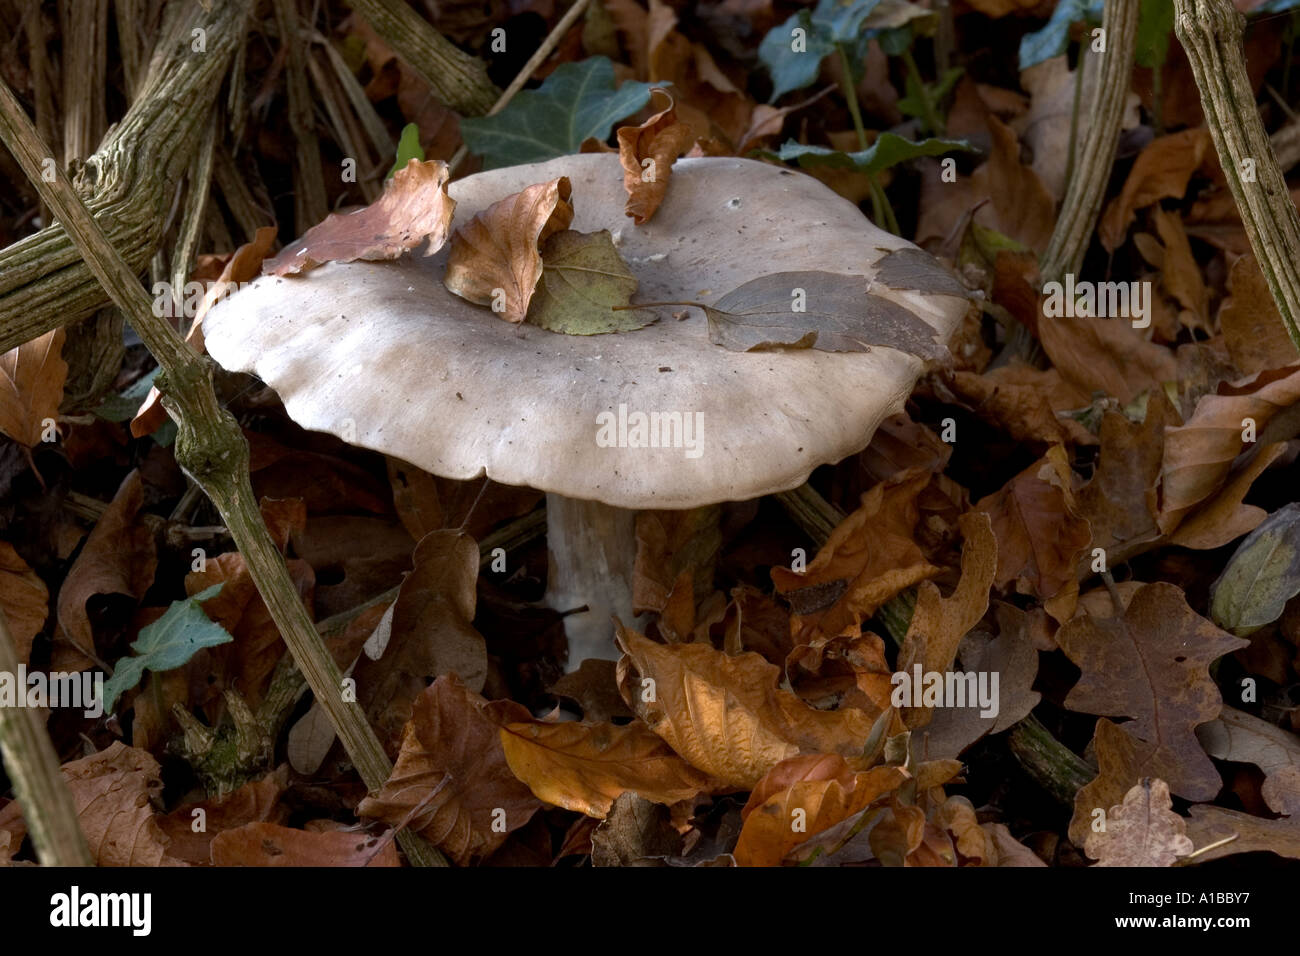 Mushroom amongst fallen leaves Stock Photo